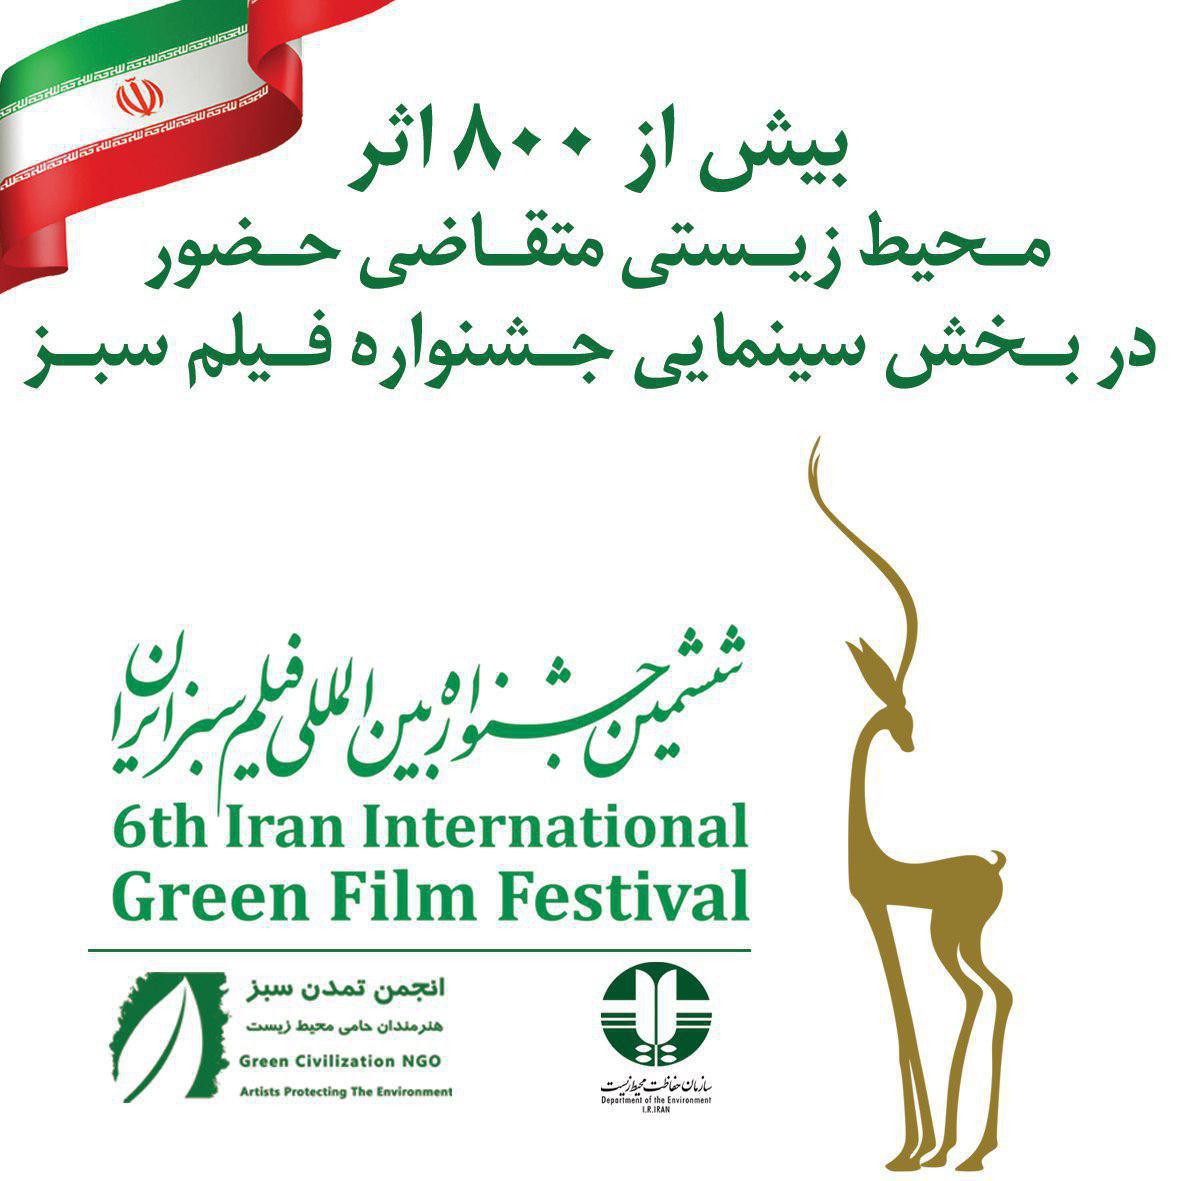 بیش از 800 اثرمحيط زيستي متقاضی حضور در بخش سينمايي جشنواره فیلم سبز